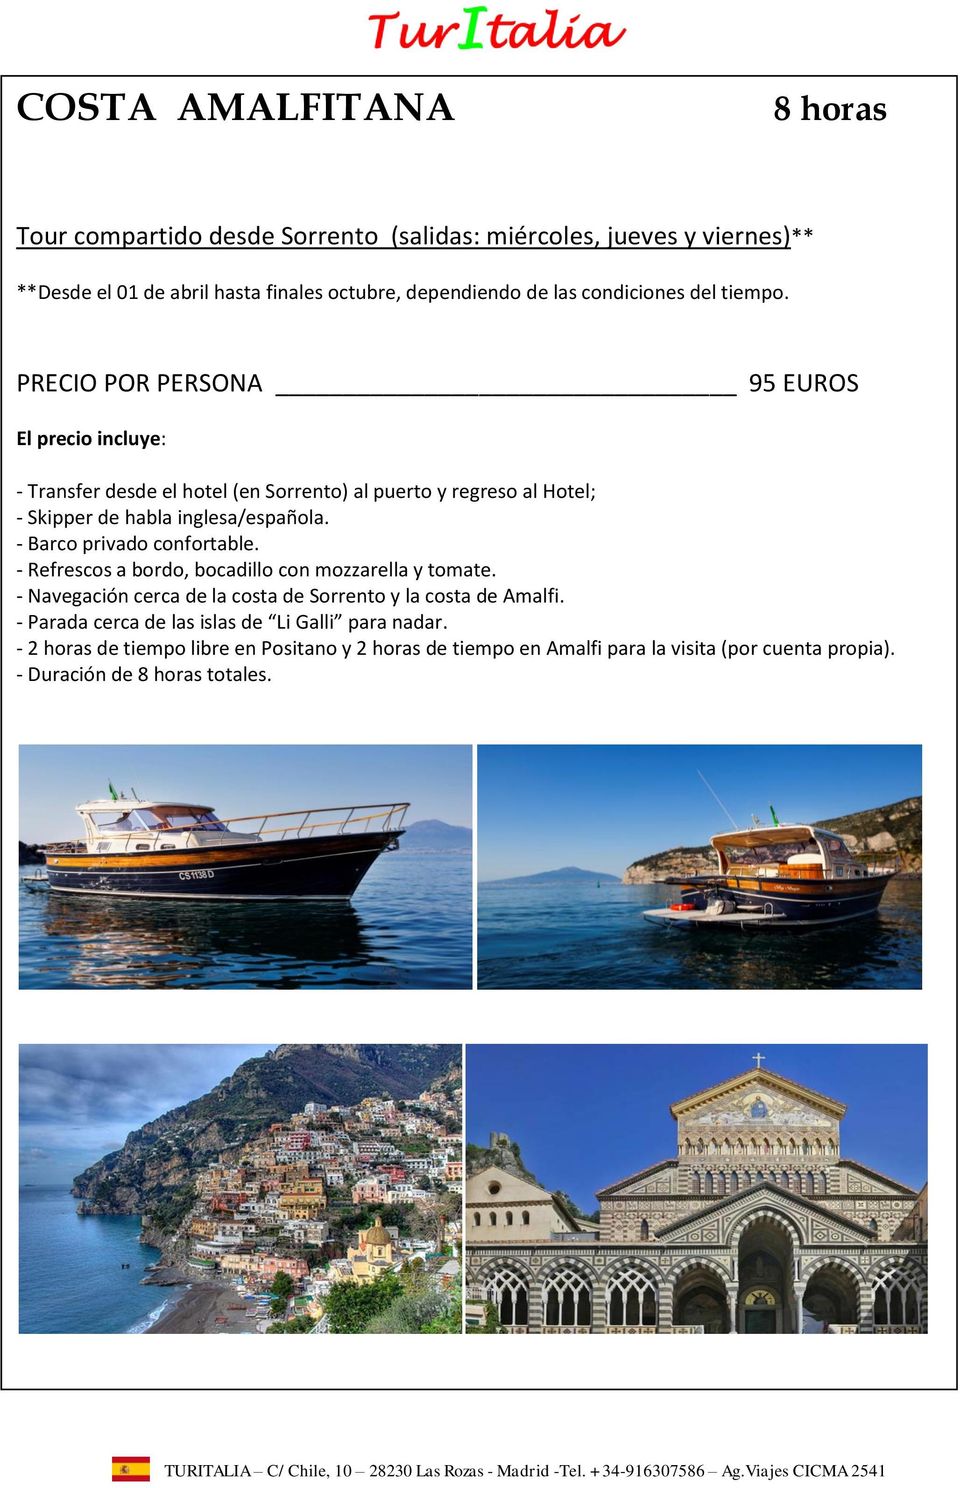 - Barco privado confortable. - Refrescos a bordo, bocadillo con mozzarella y tomate. - Navegación cerca de la costa de Sorrento y la costa de Amalfi.